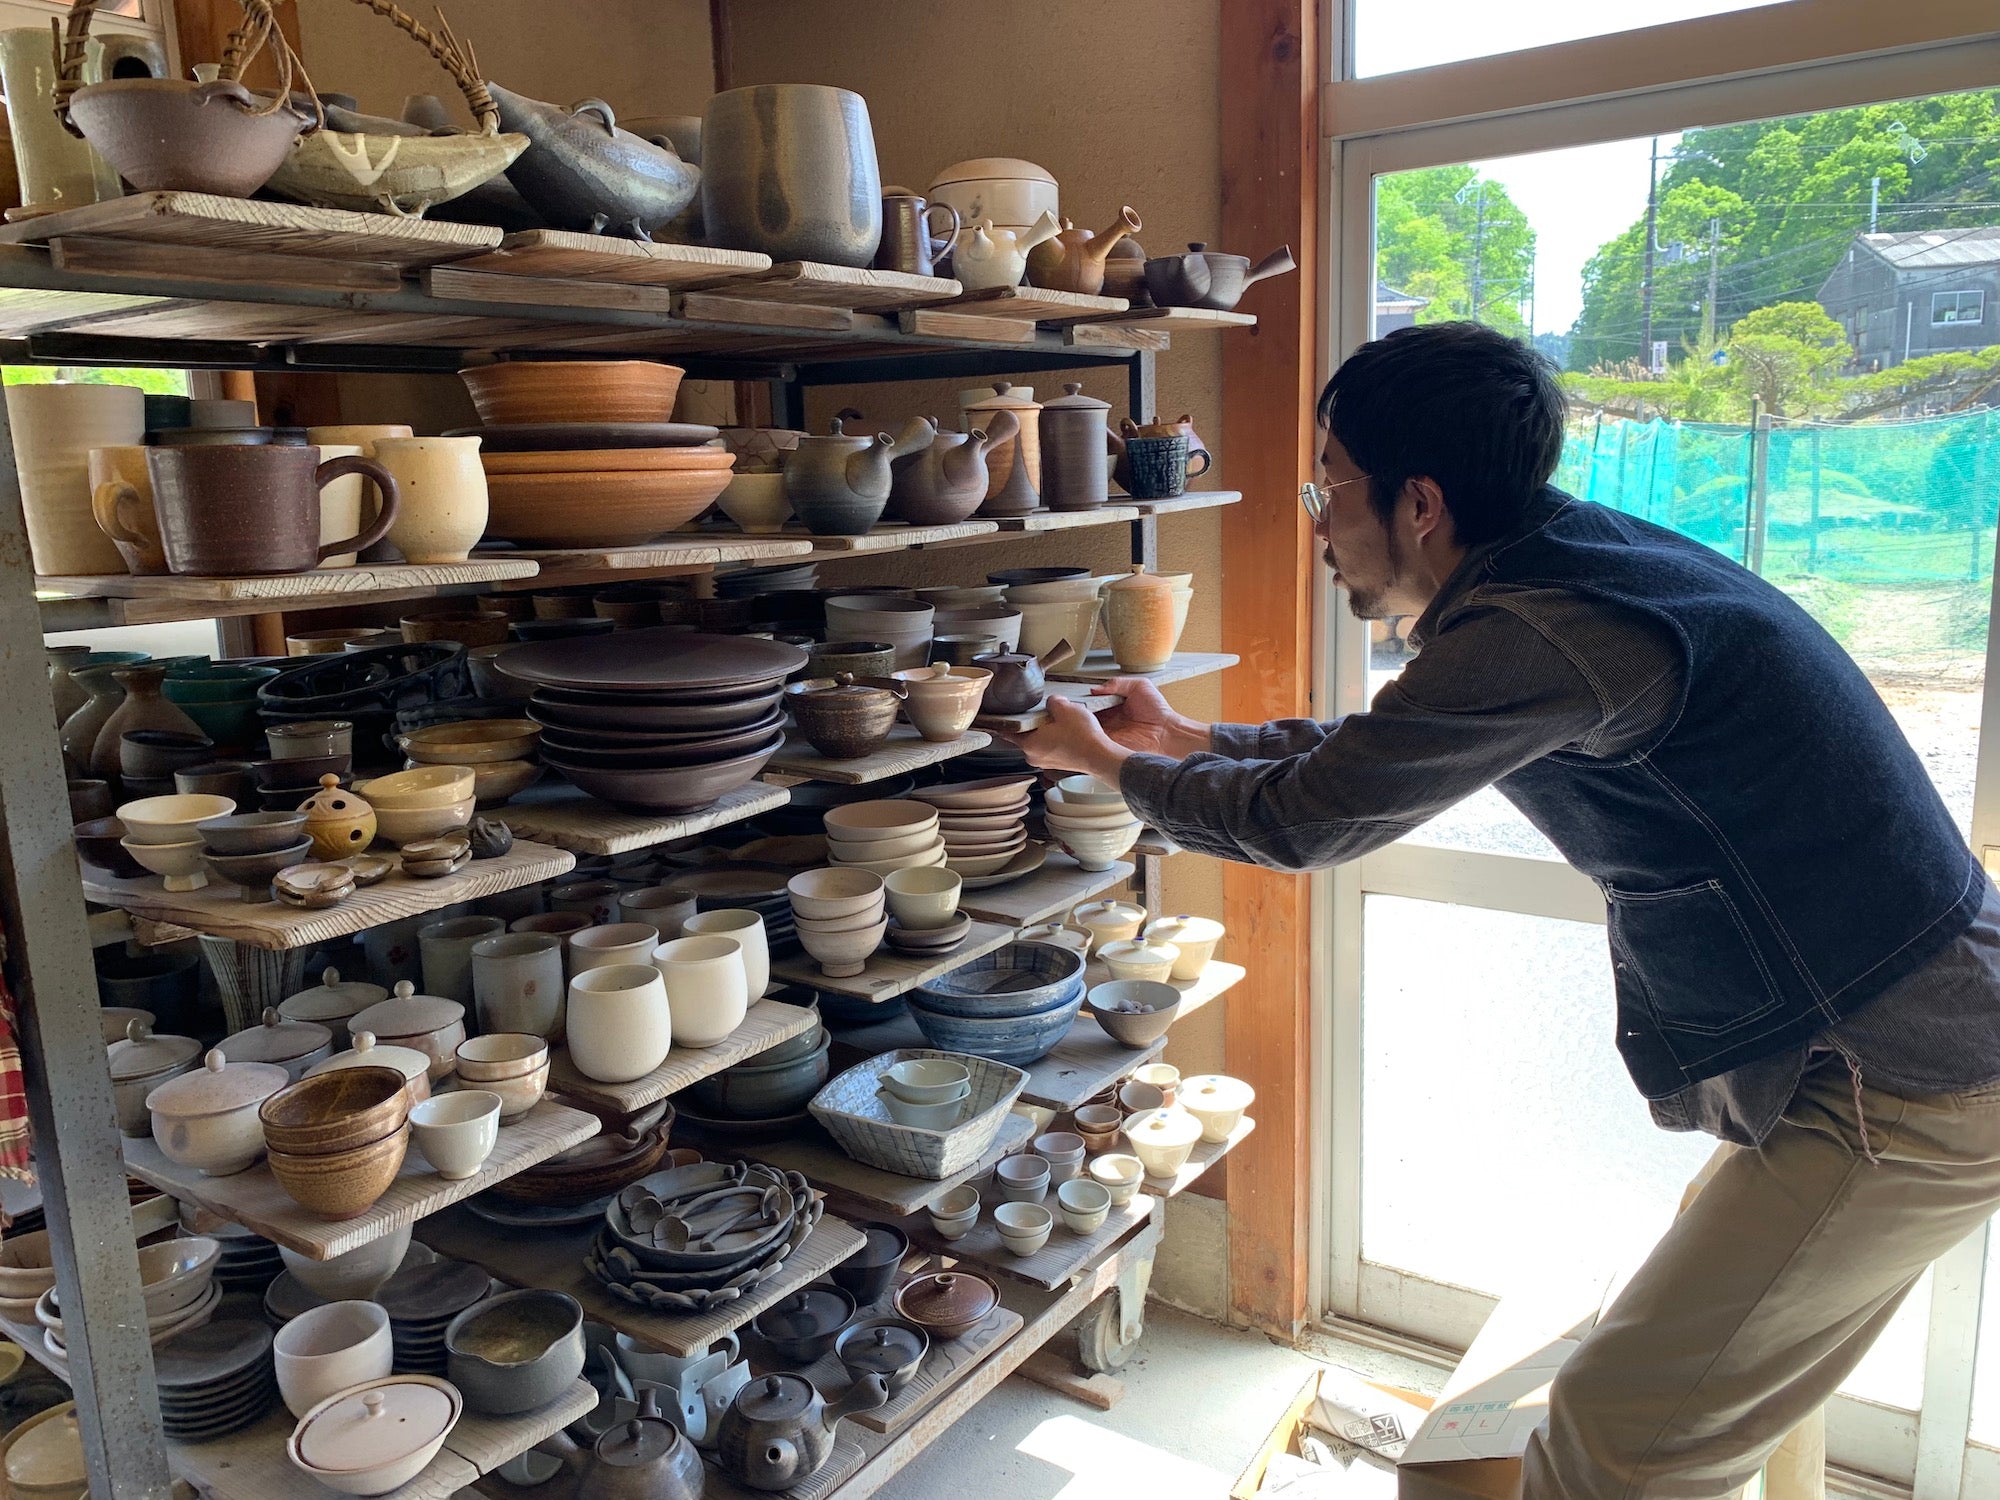 étagère de poteries artisanales du Japon